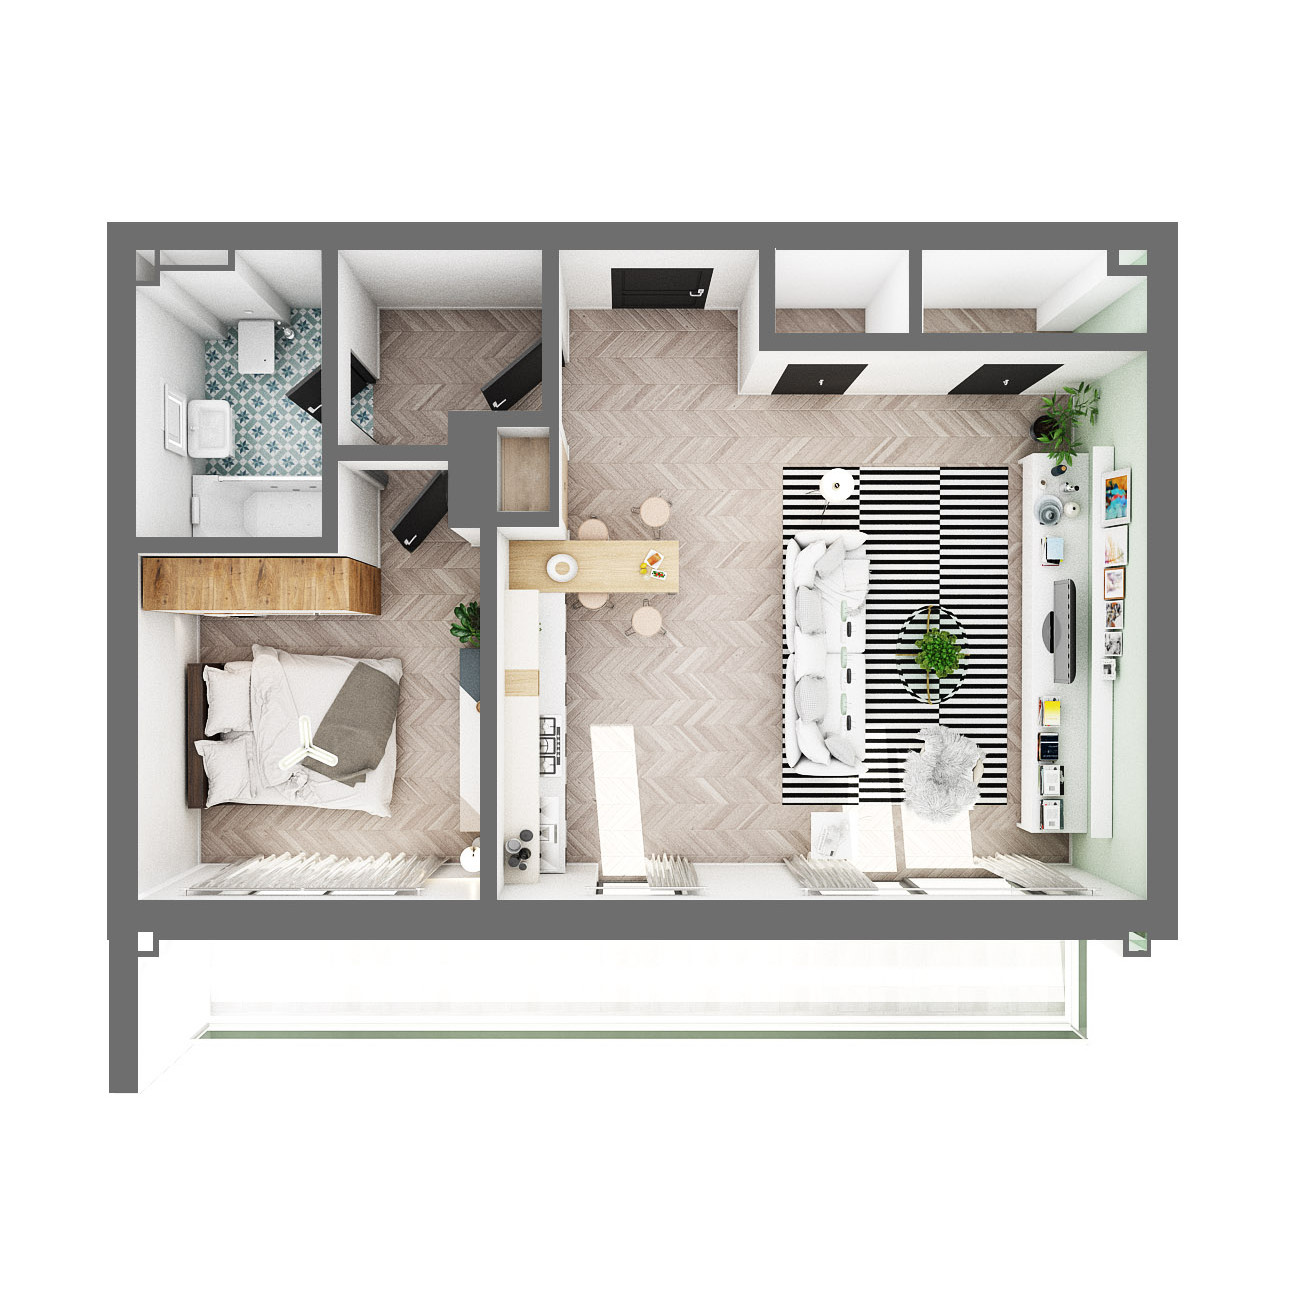 MarinaSurf - apartament de lux cu vedere la mare - 2 camere